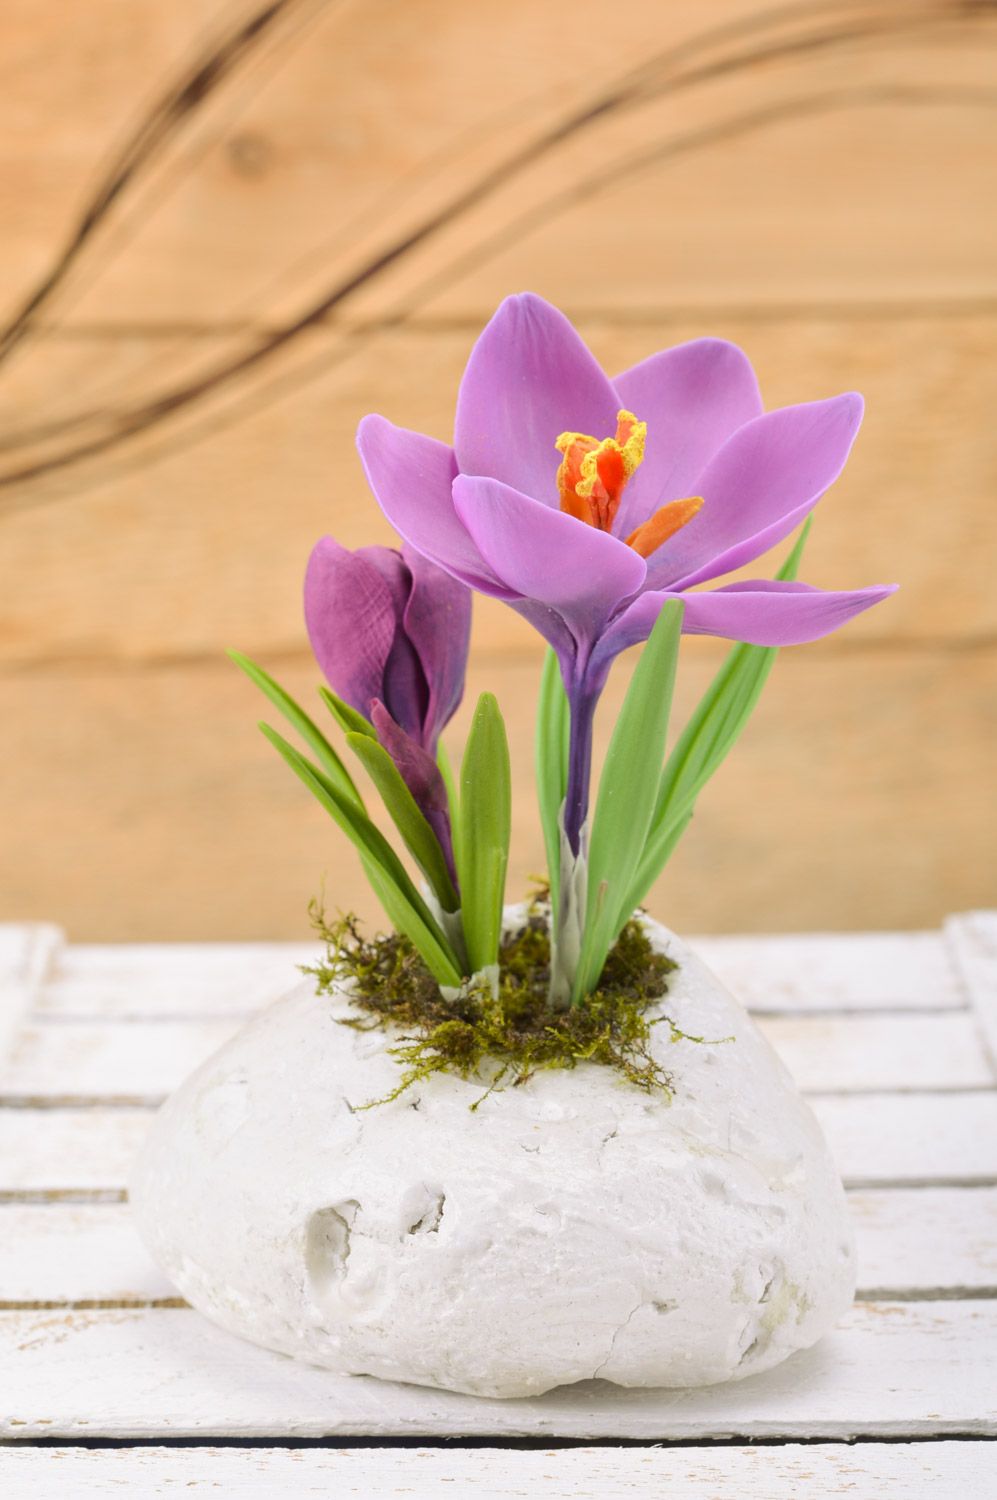 Flor artificial de croco de arcilla polimérica hecha a mano para decorar el interior foto 1